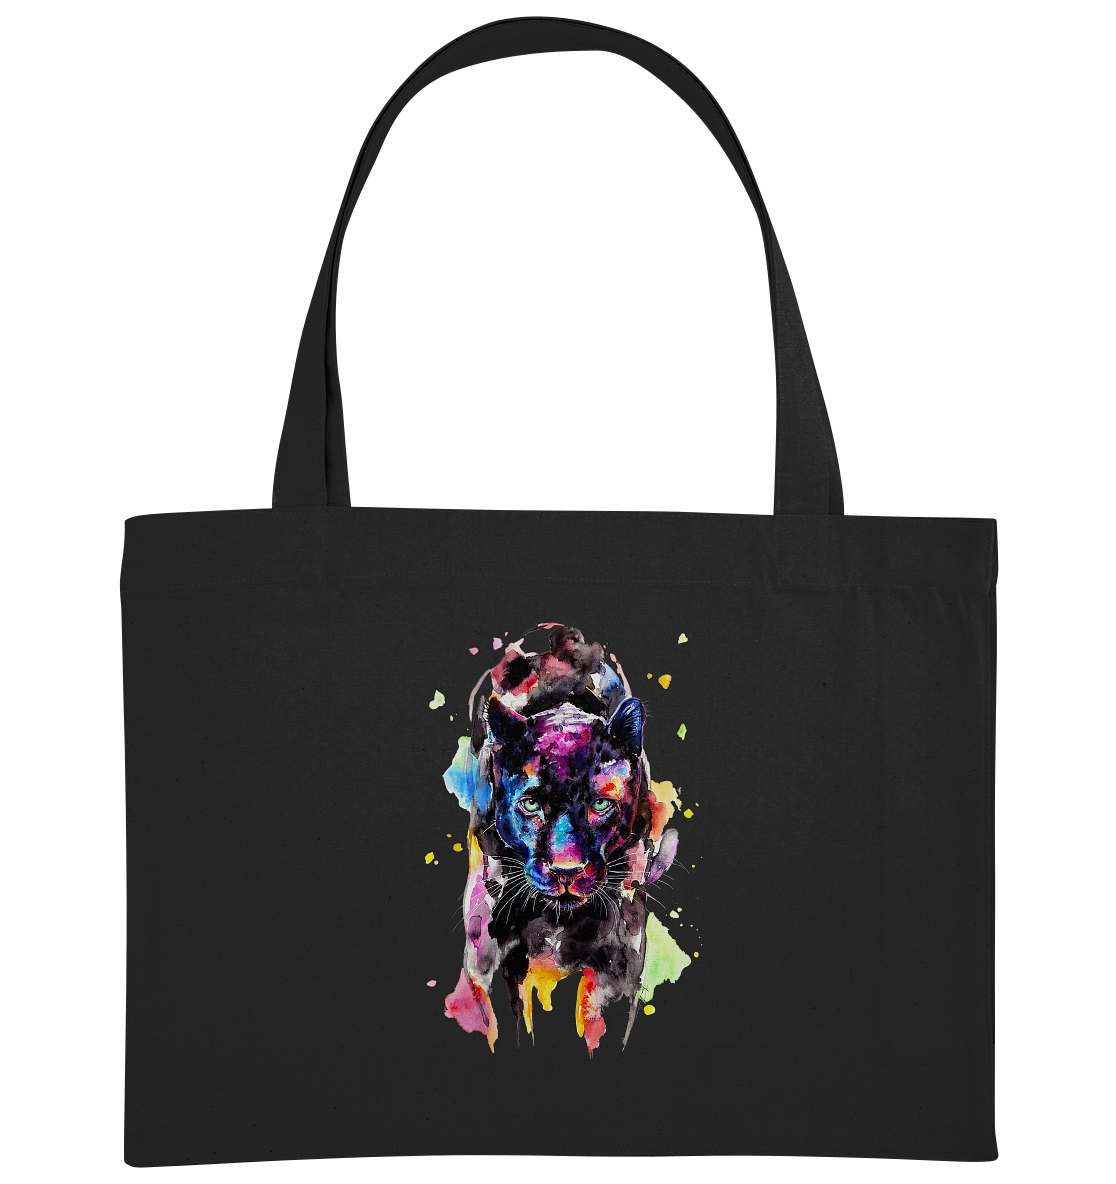 Schwarzer Panther - Organic Shopping-Bag